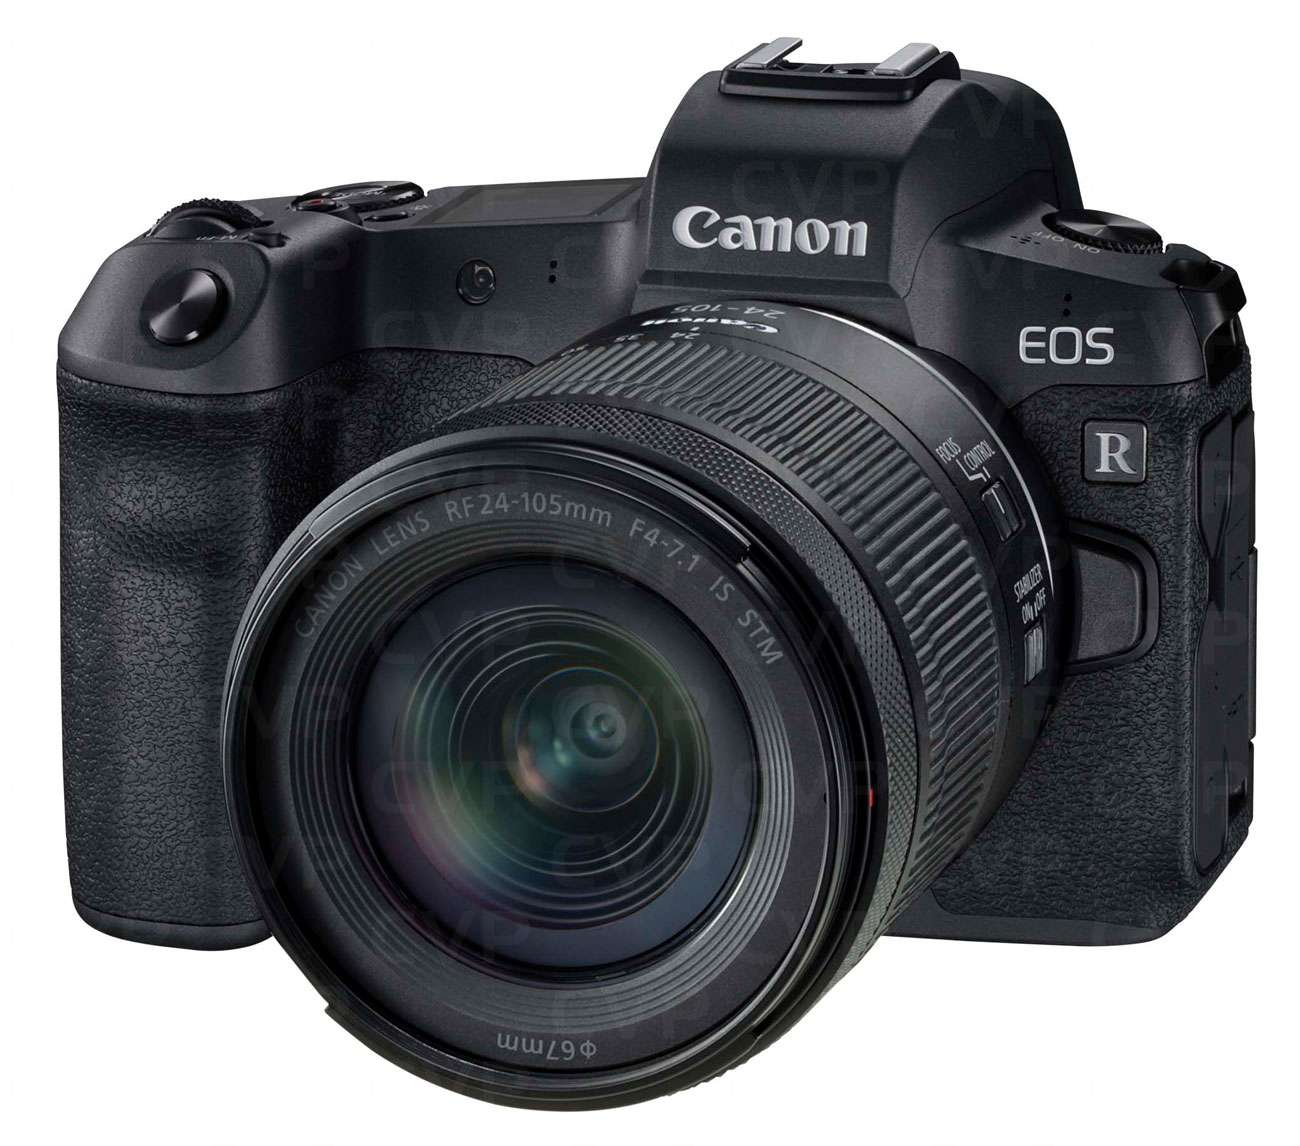 Canon EOS RP Kit RF 24-105mm F4 - 7.1 IS STM (Mới 100%) - Bảo hành chính hãng 02 năm trên toàn quốc Cover